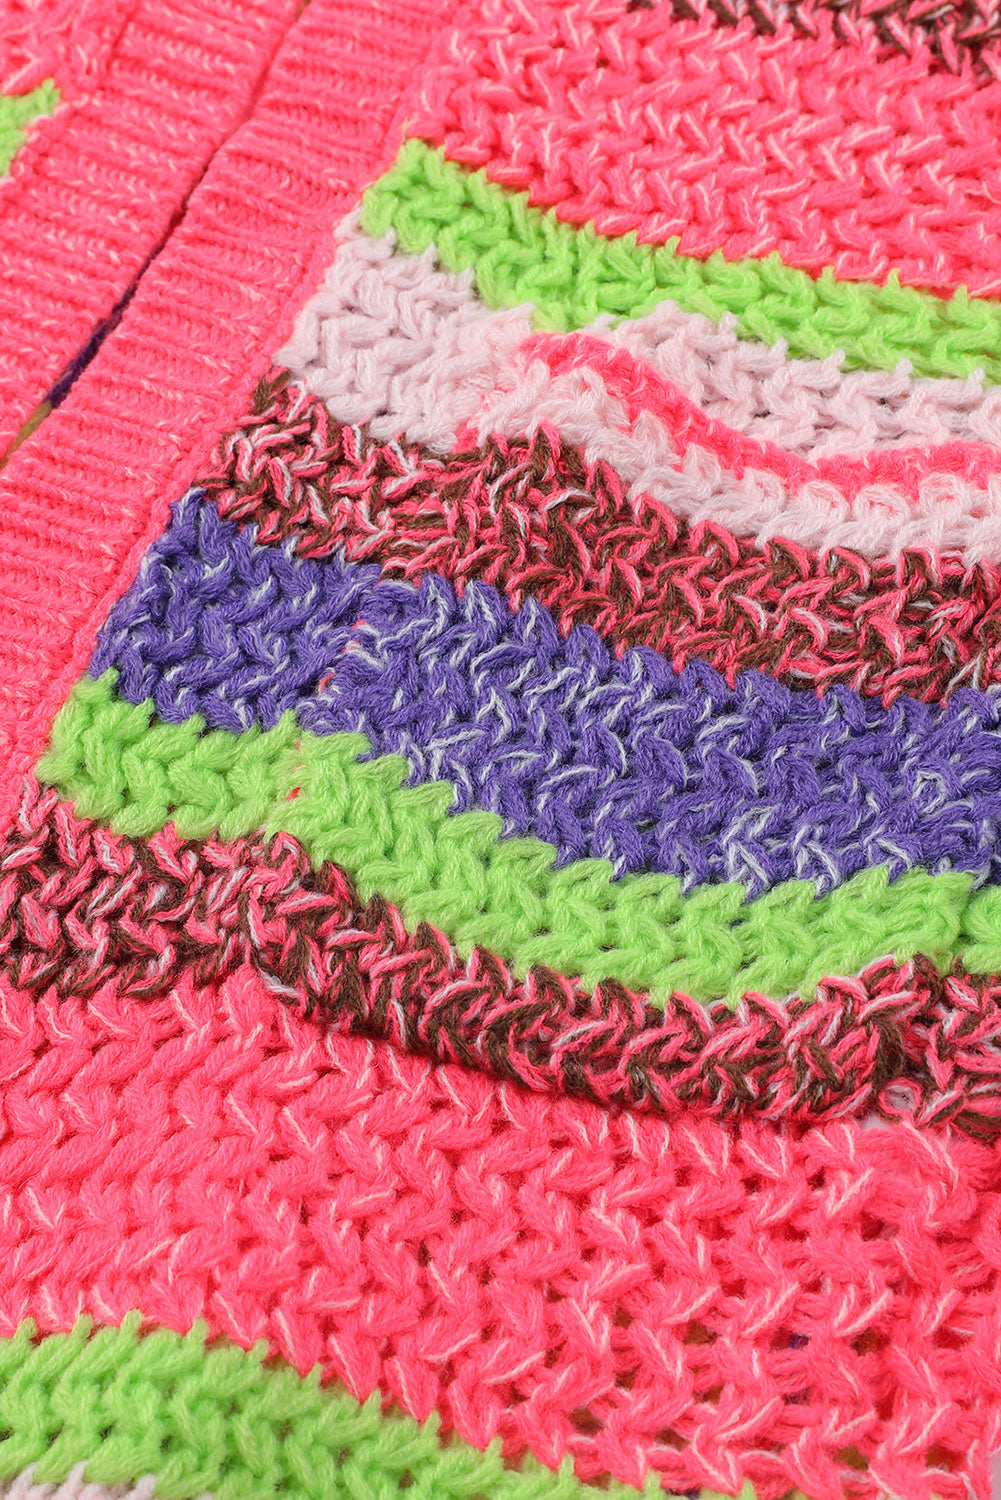 Cardigan aperto sul davanti con cappuccio lavorato a maglia a righe rosa